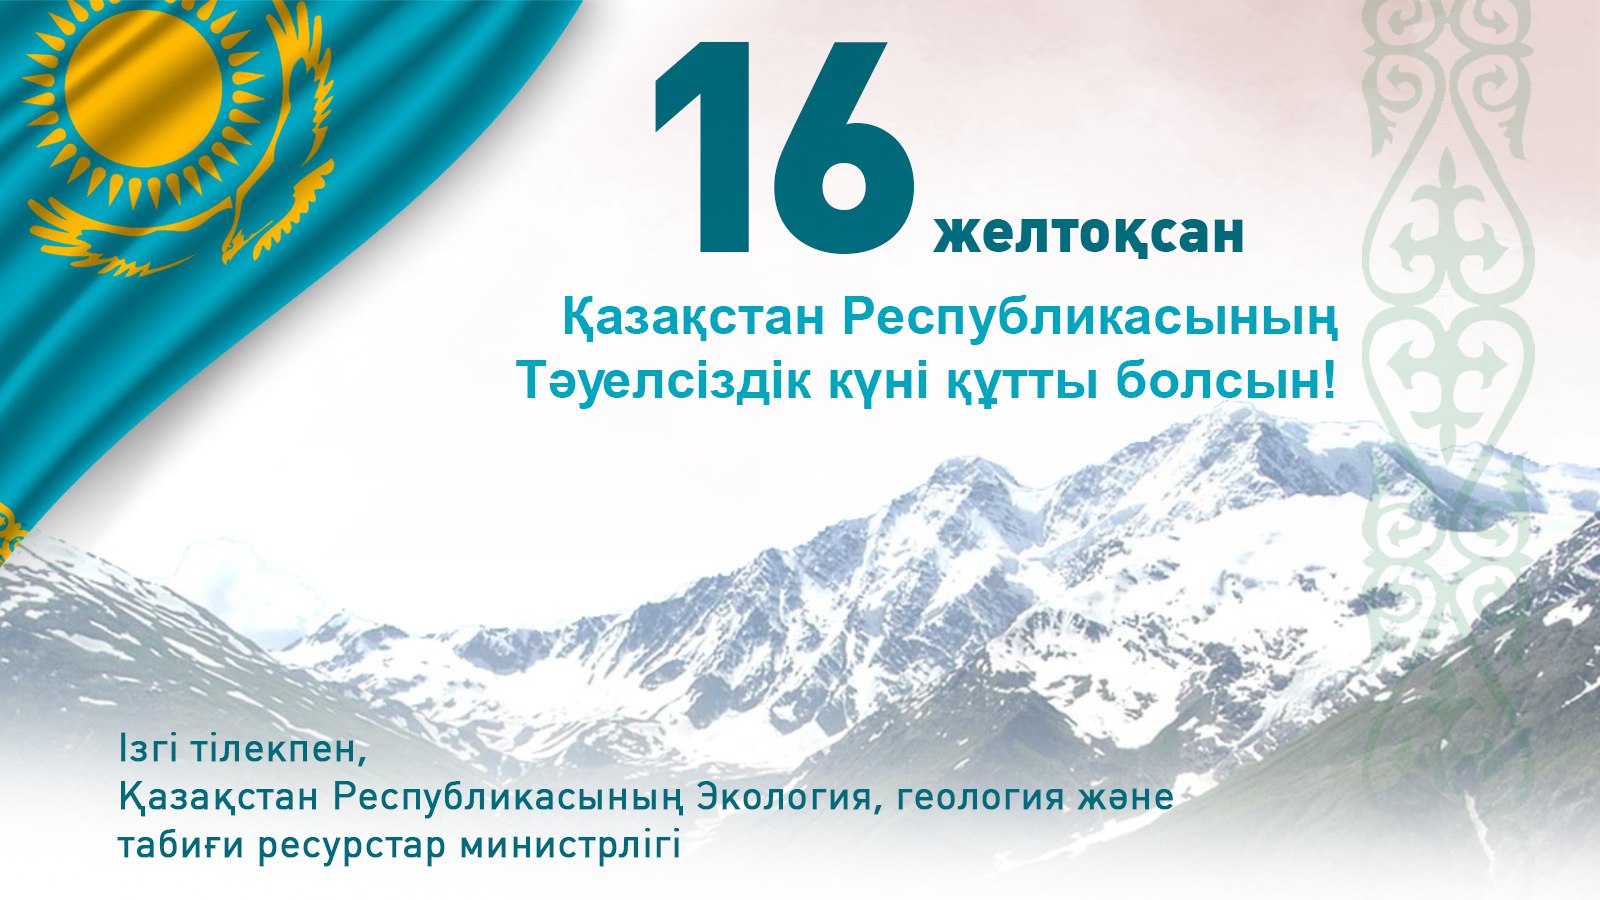 Поздравляем с Днем Независимости Республики Казахстан!